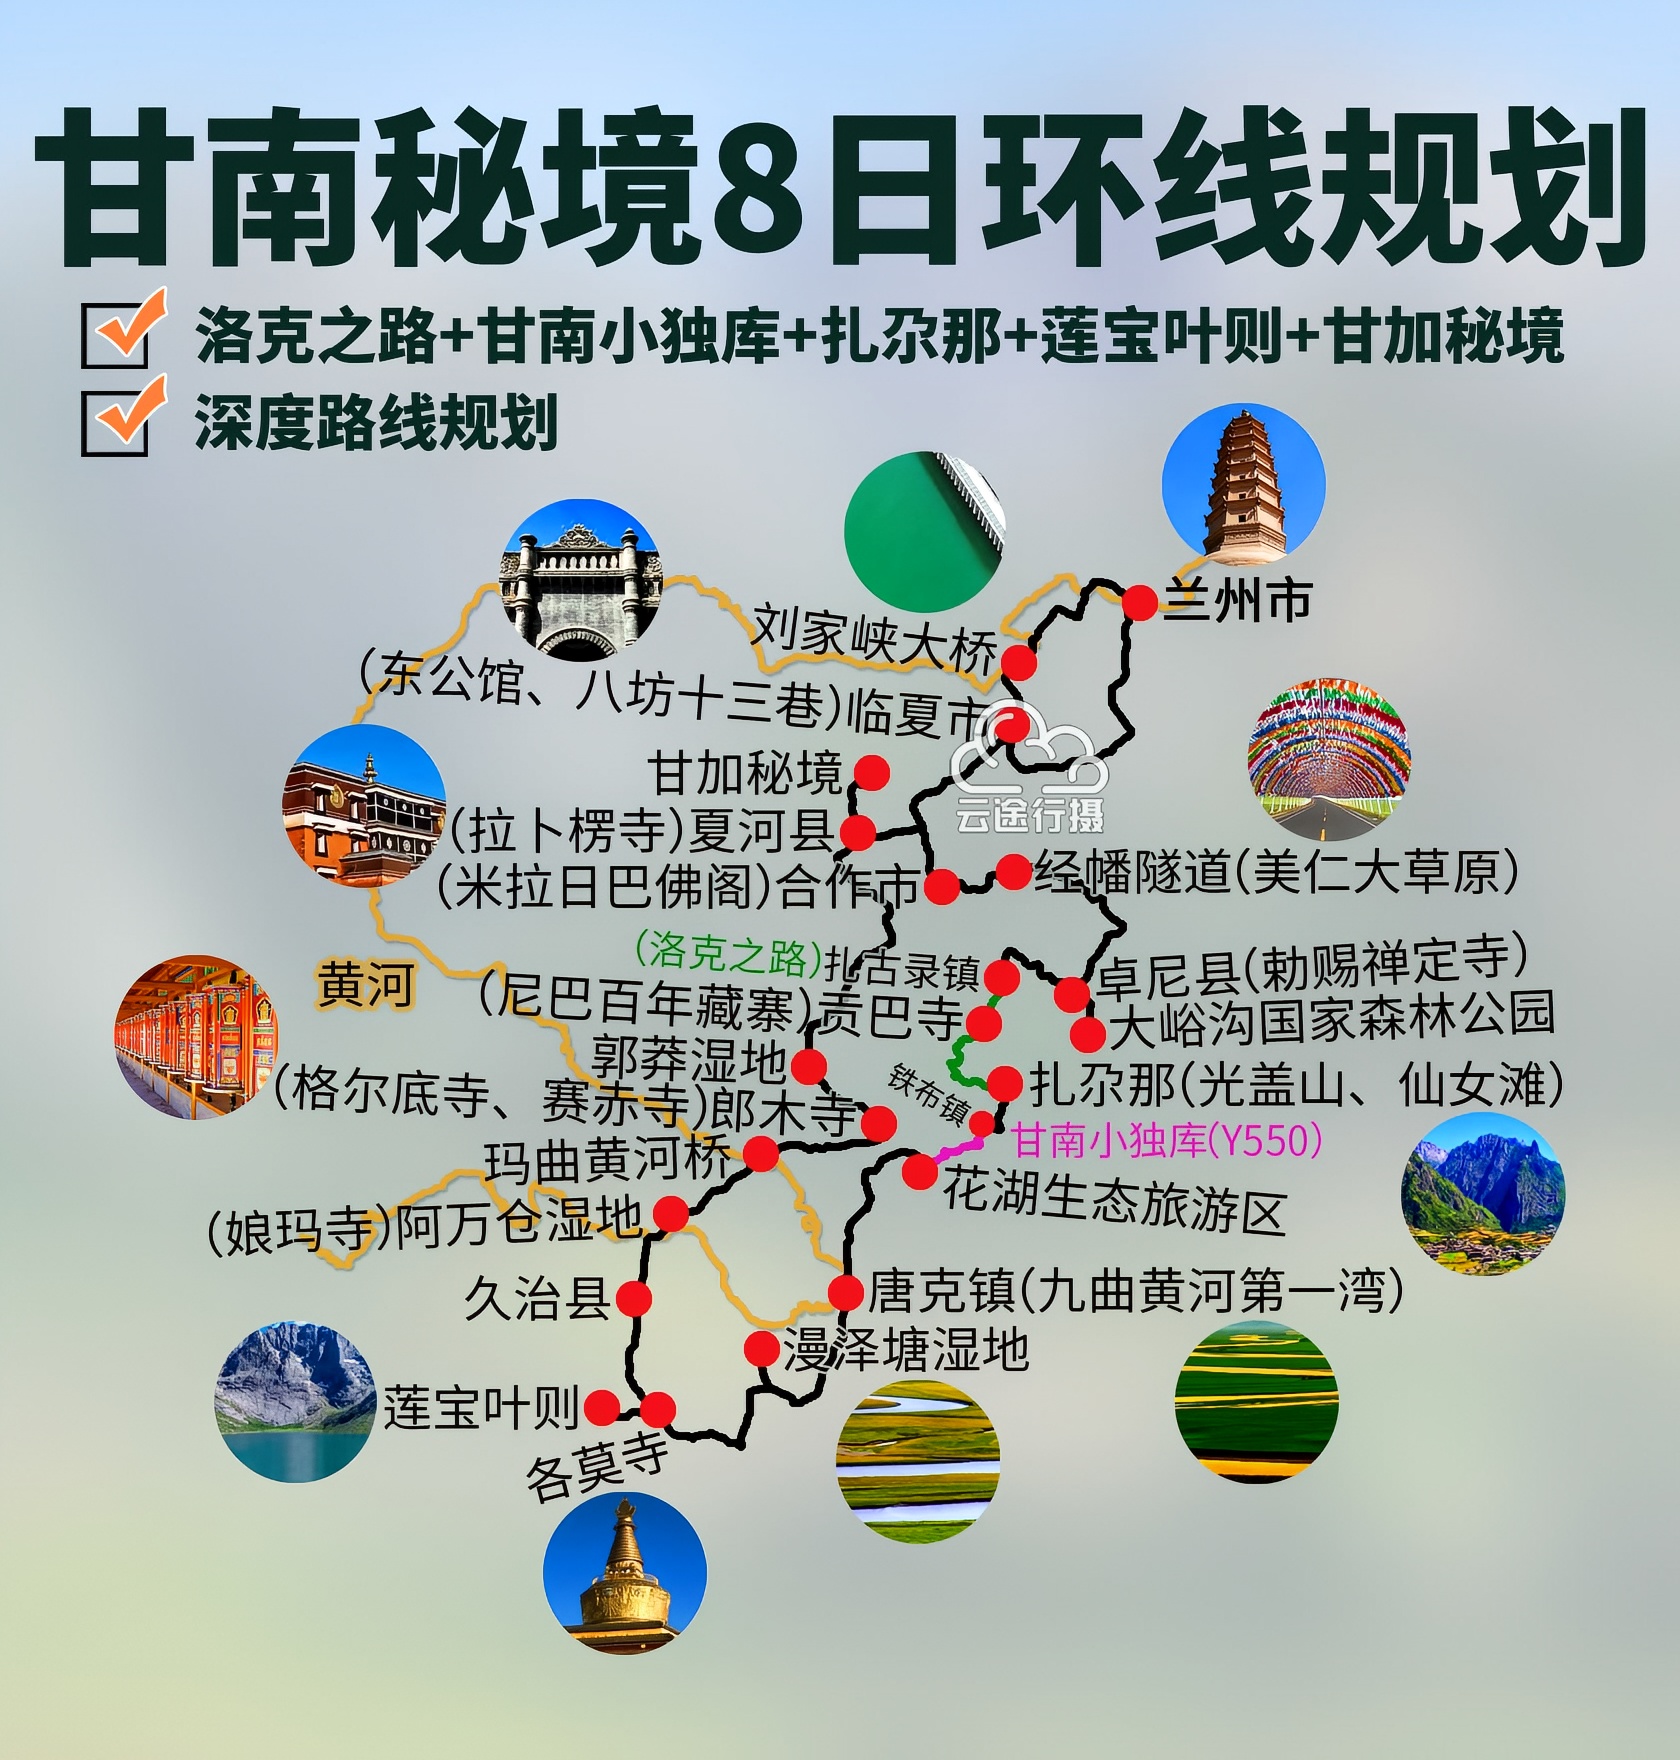 甘南秘境8日环线攻略路线图（原创），洛克之路+甘南小独库公路